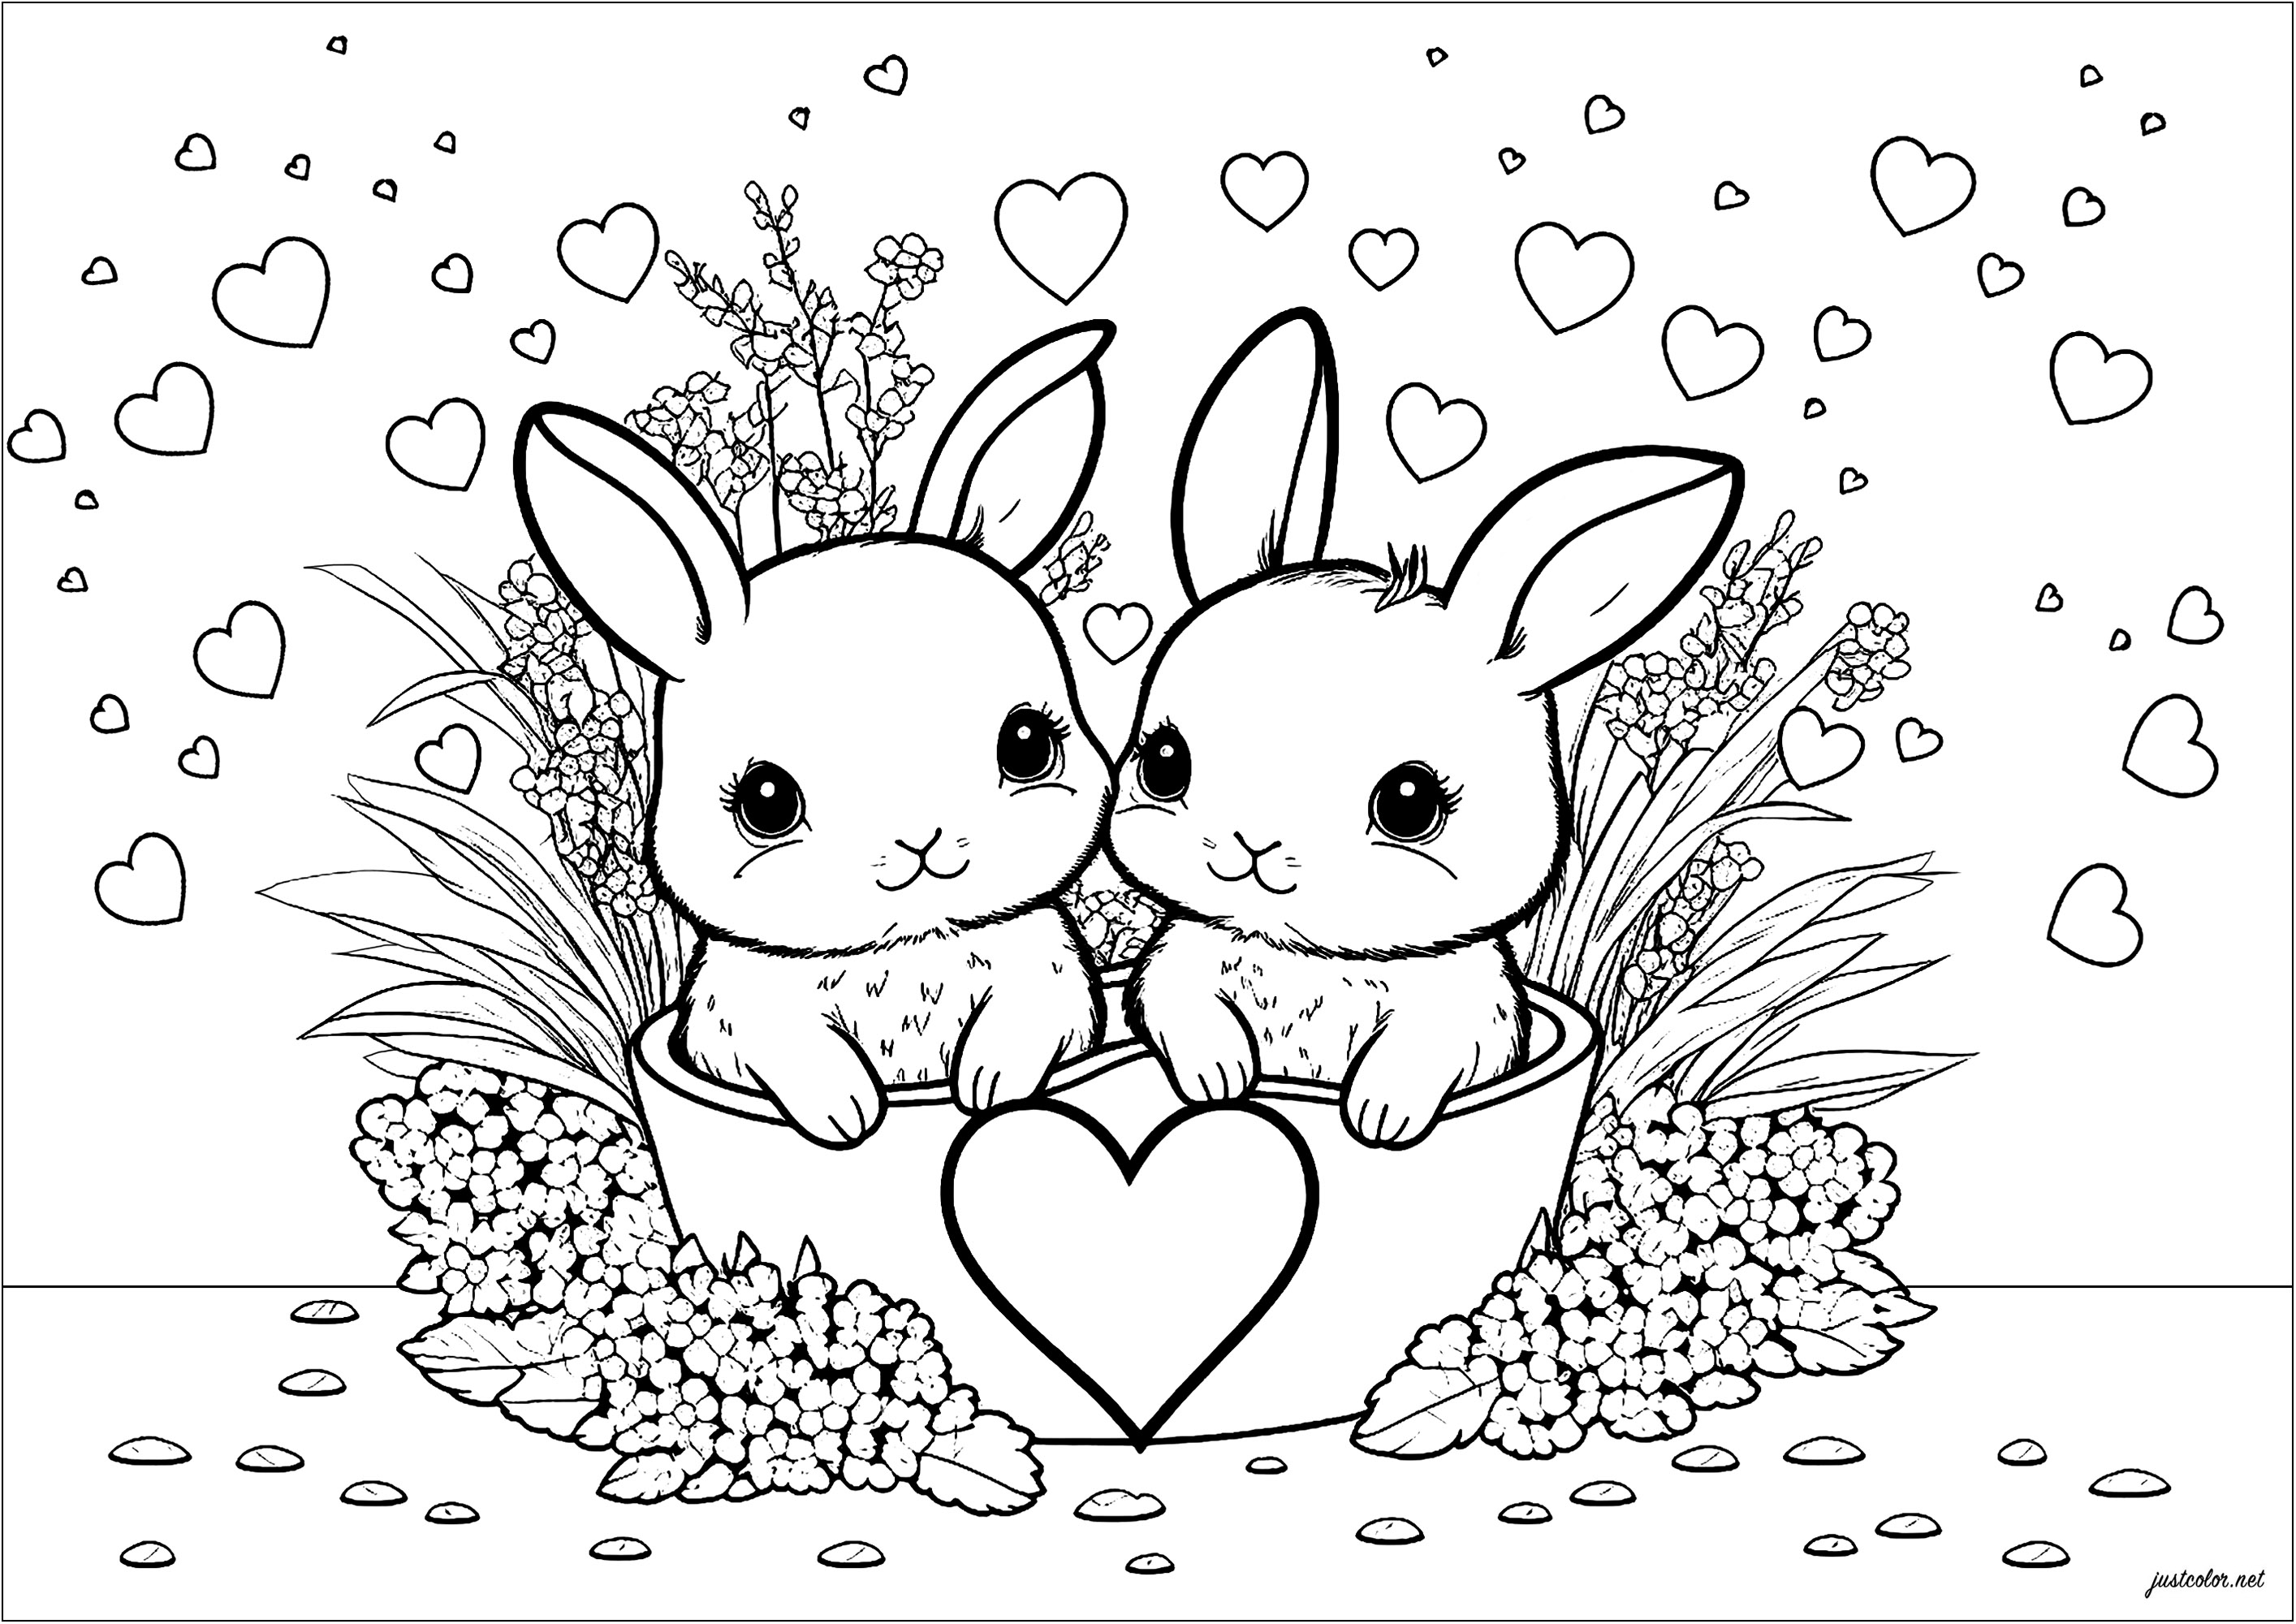 Einfache Färbung Seite zeigt zwei Kaninchen und viele Herzen. Diese Malvorlage ist wirklich süß und kindlich. Es zeigt zwei kleine Kaninchen, die von vielen bunten Herzen umgeben sind. Die Kaninchen sind sehr ausdrucksstark und ihre Ohren sind groß und weich.